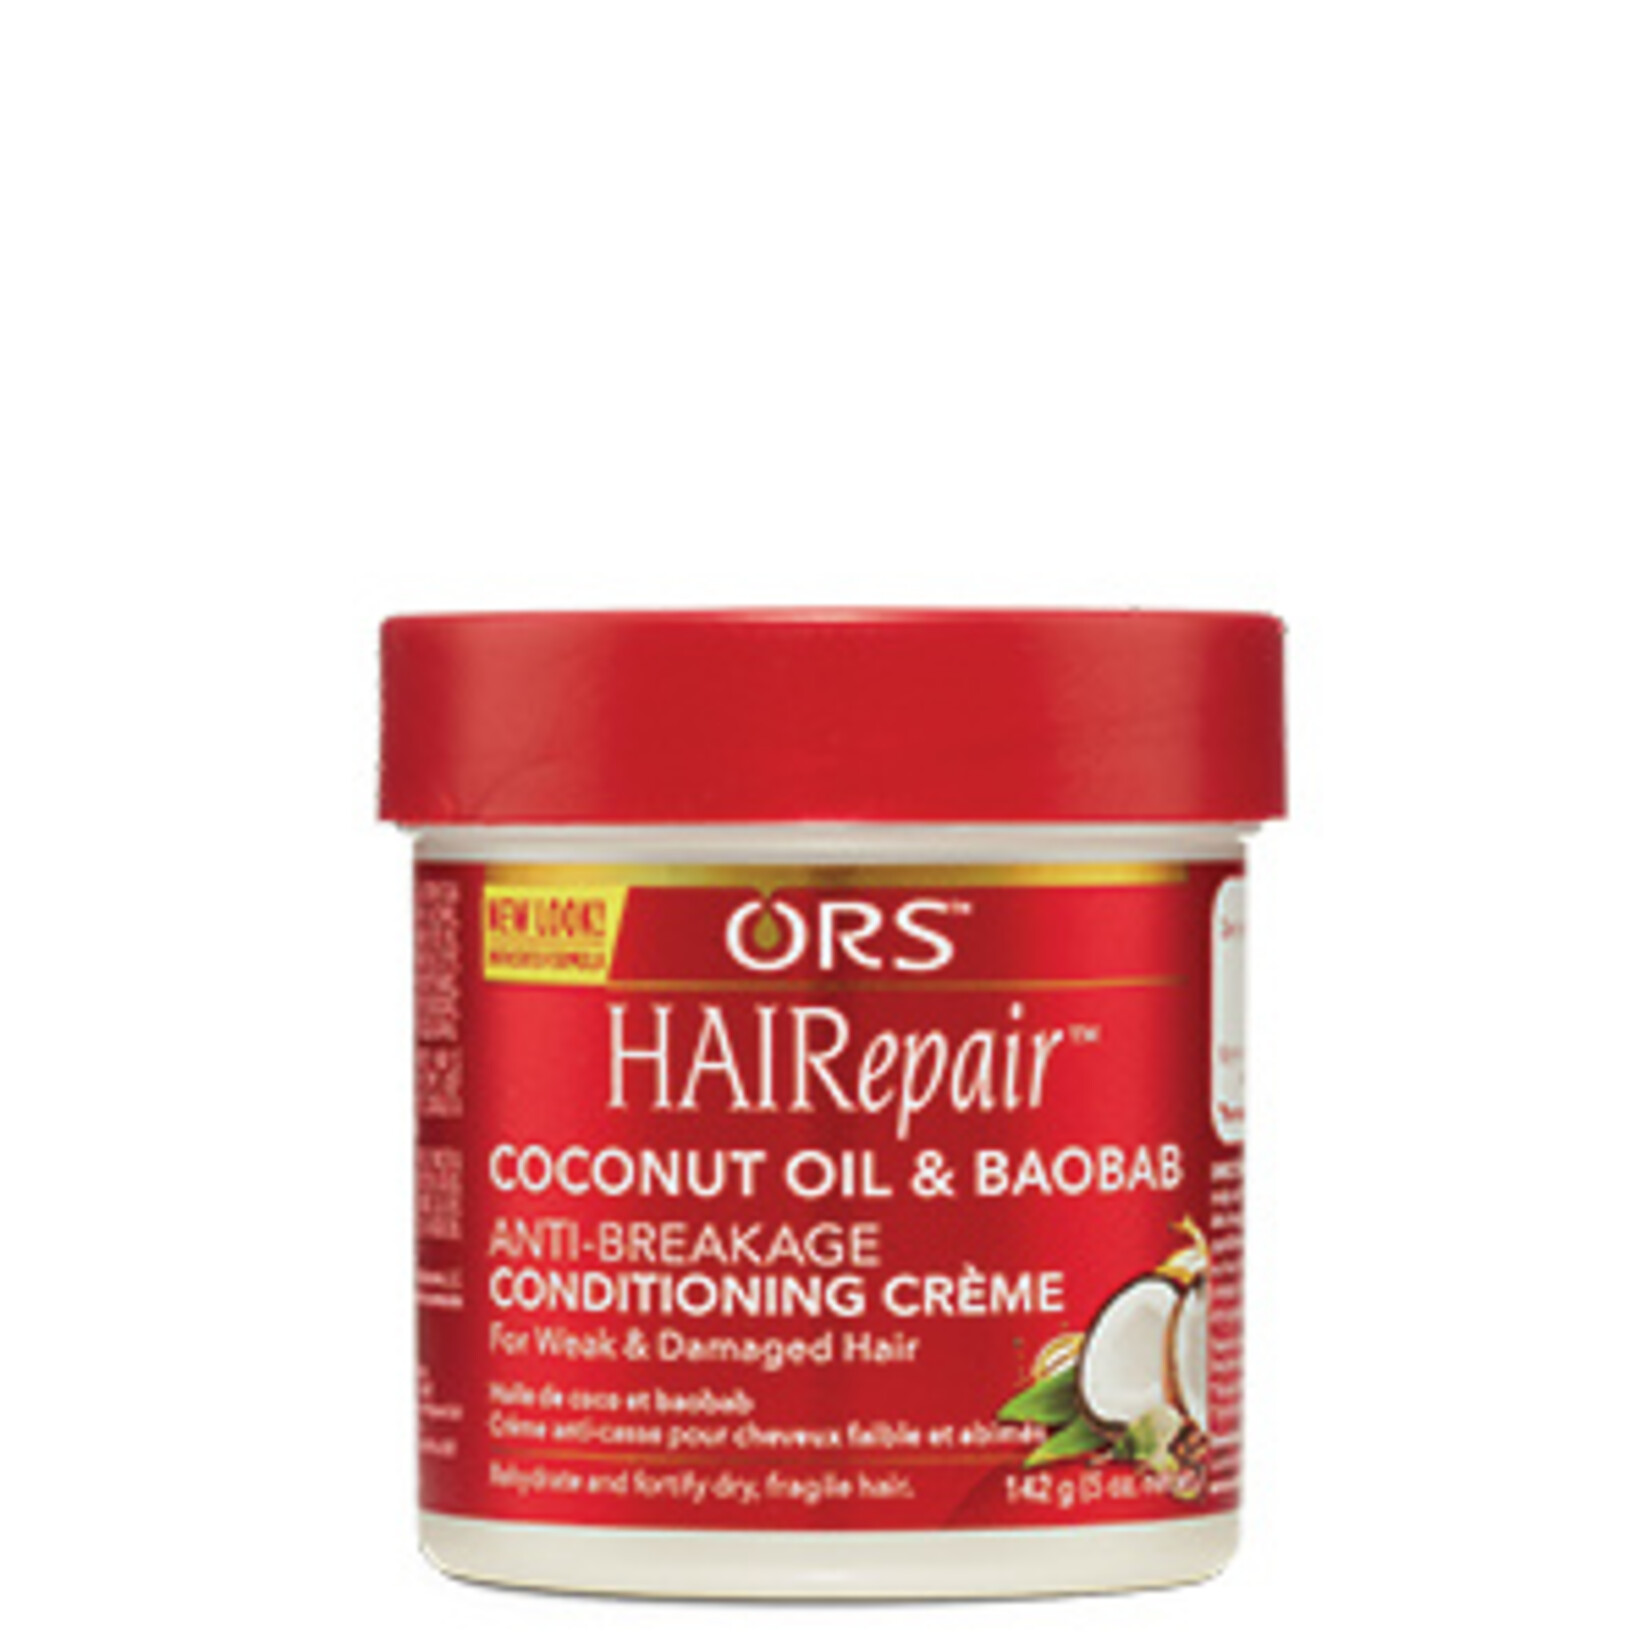 ORS ORS HAIR REPAIR ANTI-BREAKAGE 5oz